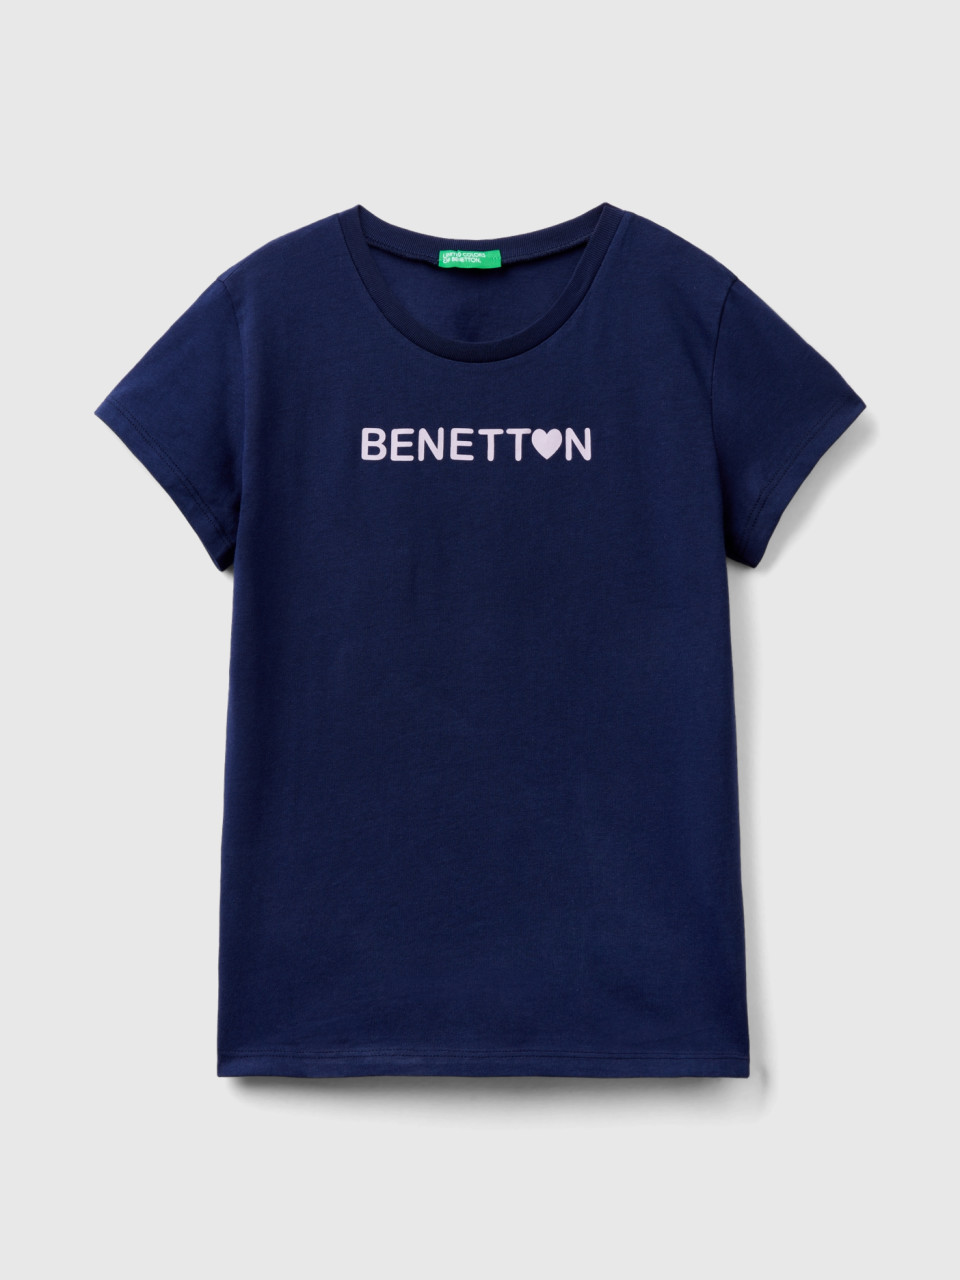 Benetton, Maglietta Con Logo 100% Cotone, Blu Scuro, Bambini